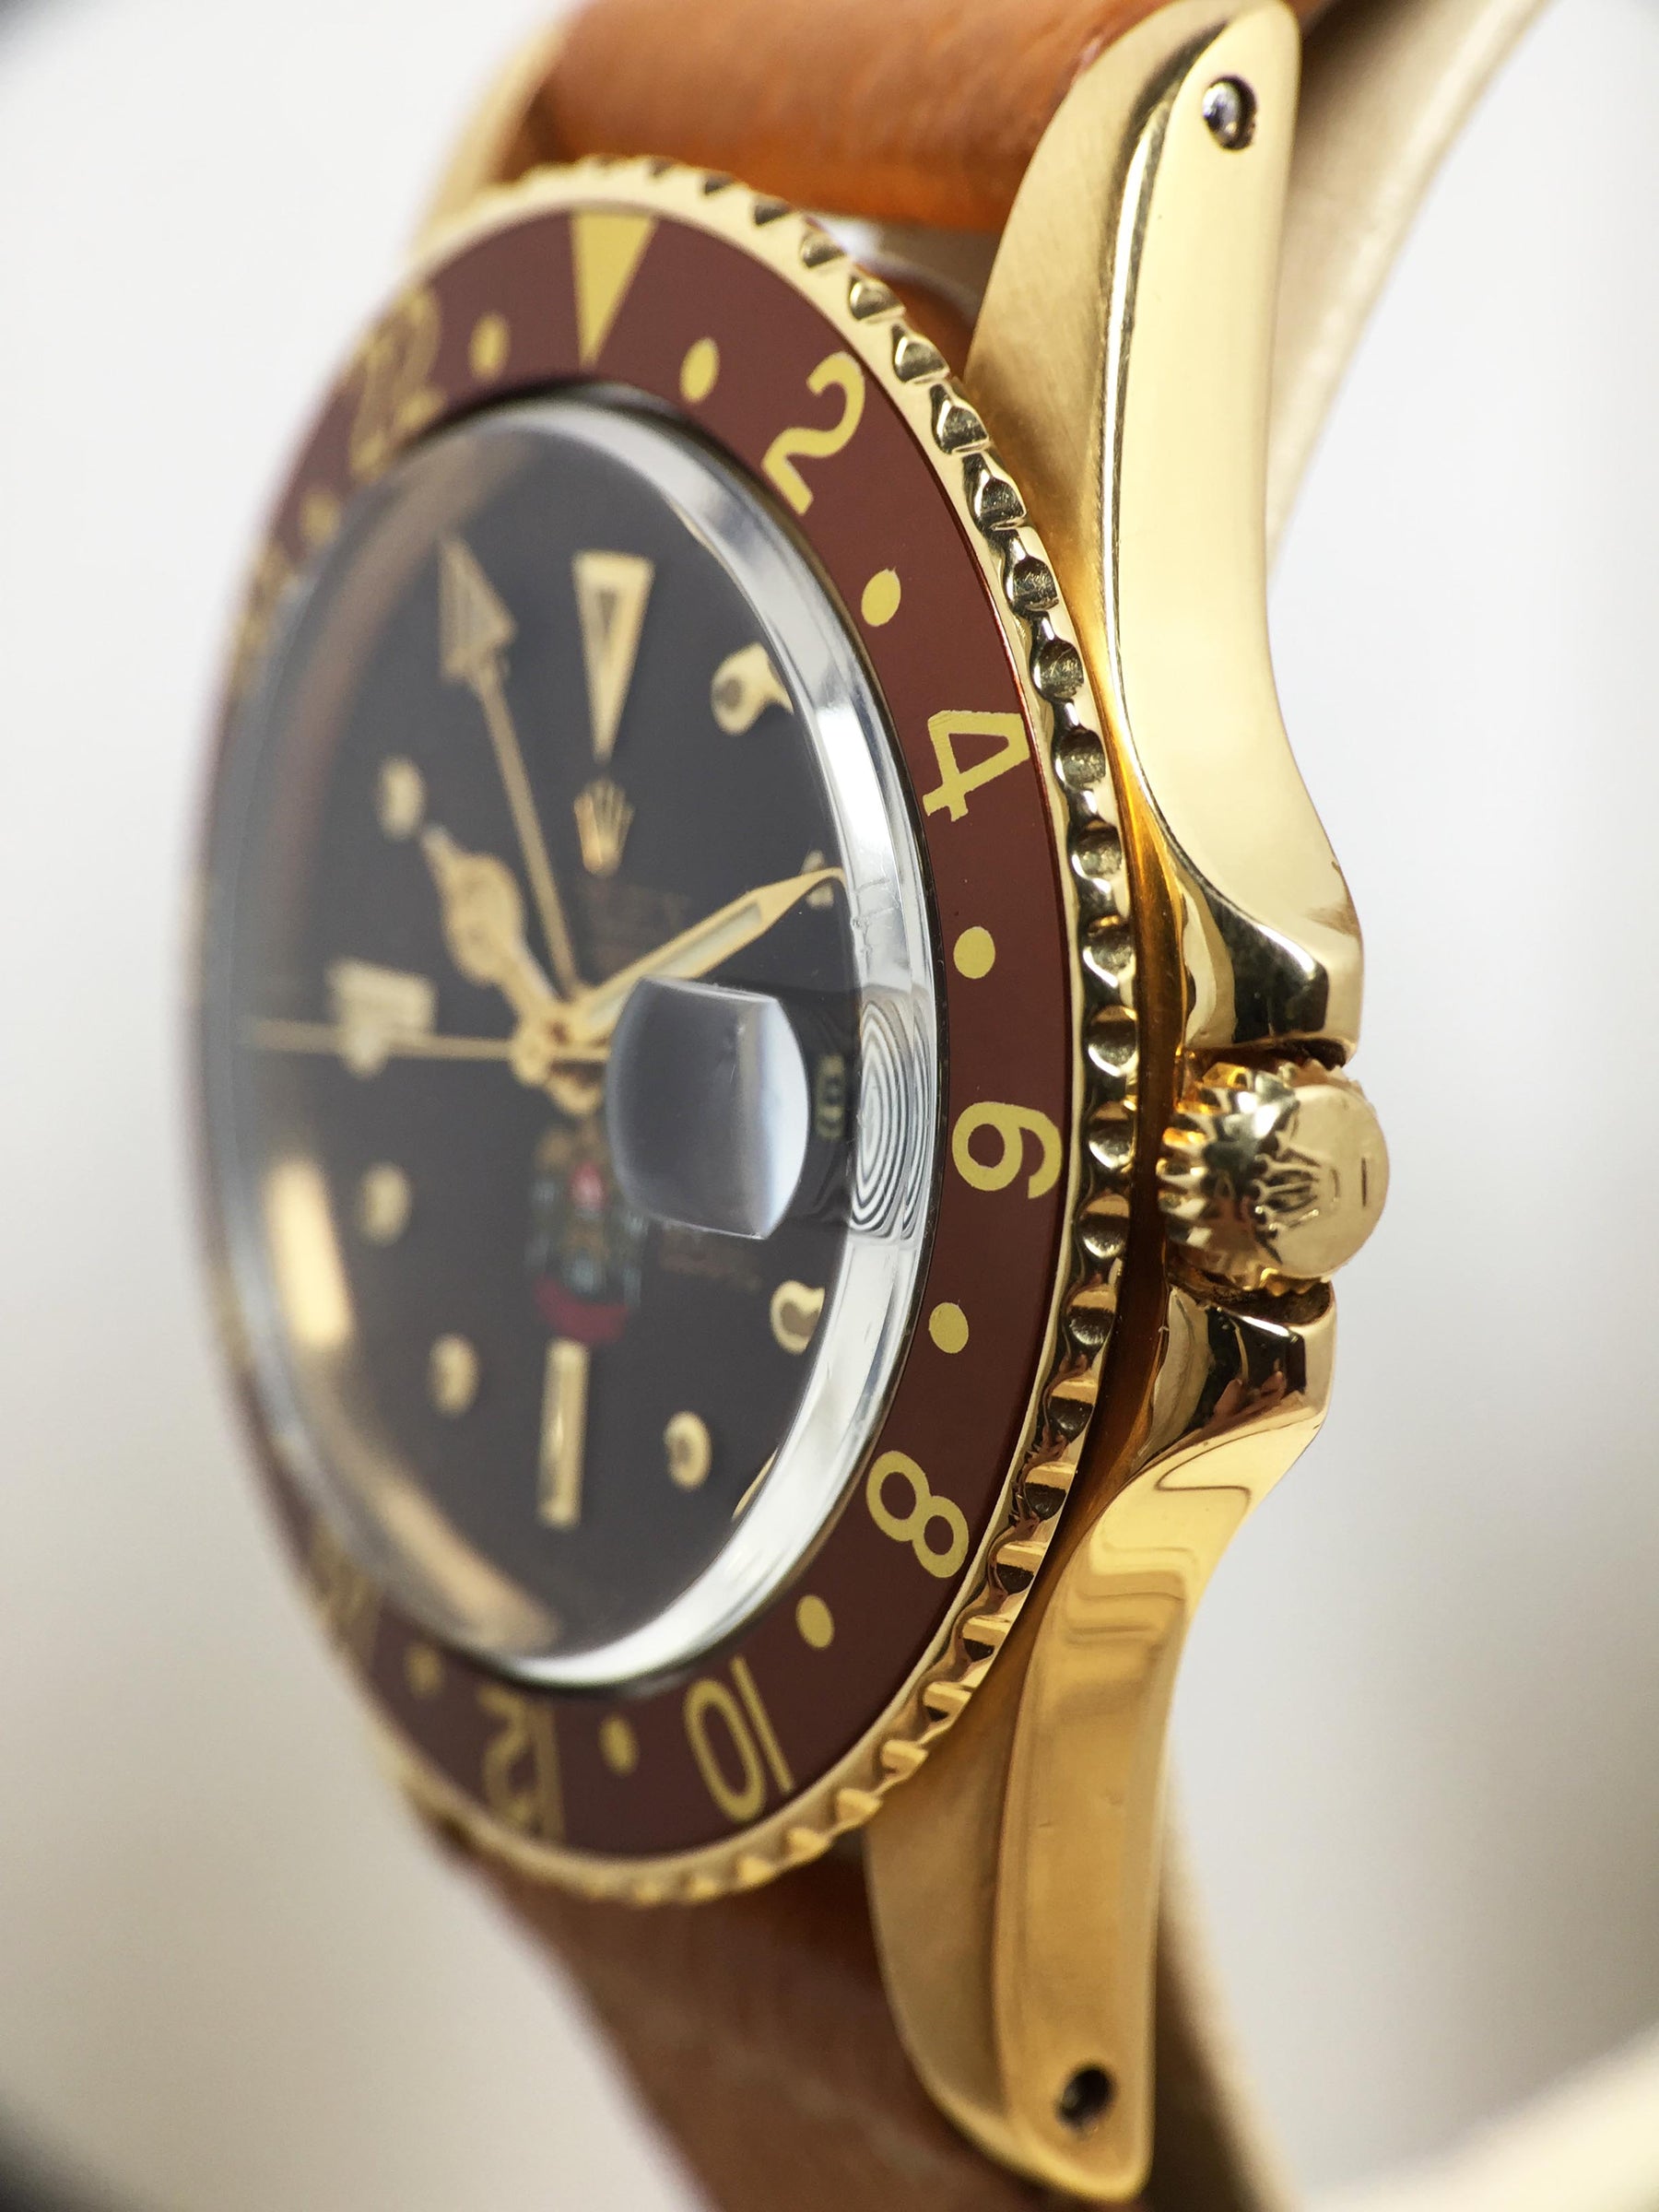 1974 Rolex GMT Master UAE Ref. 1675 - Price on Request